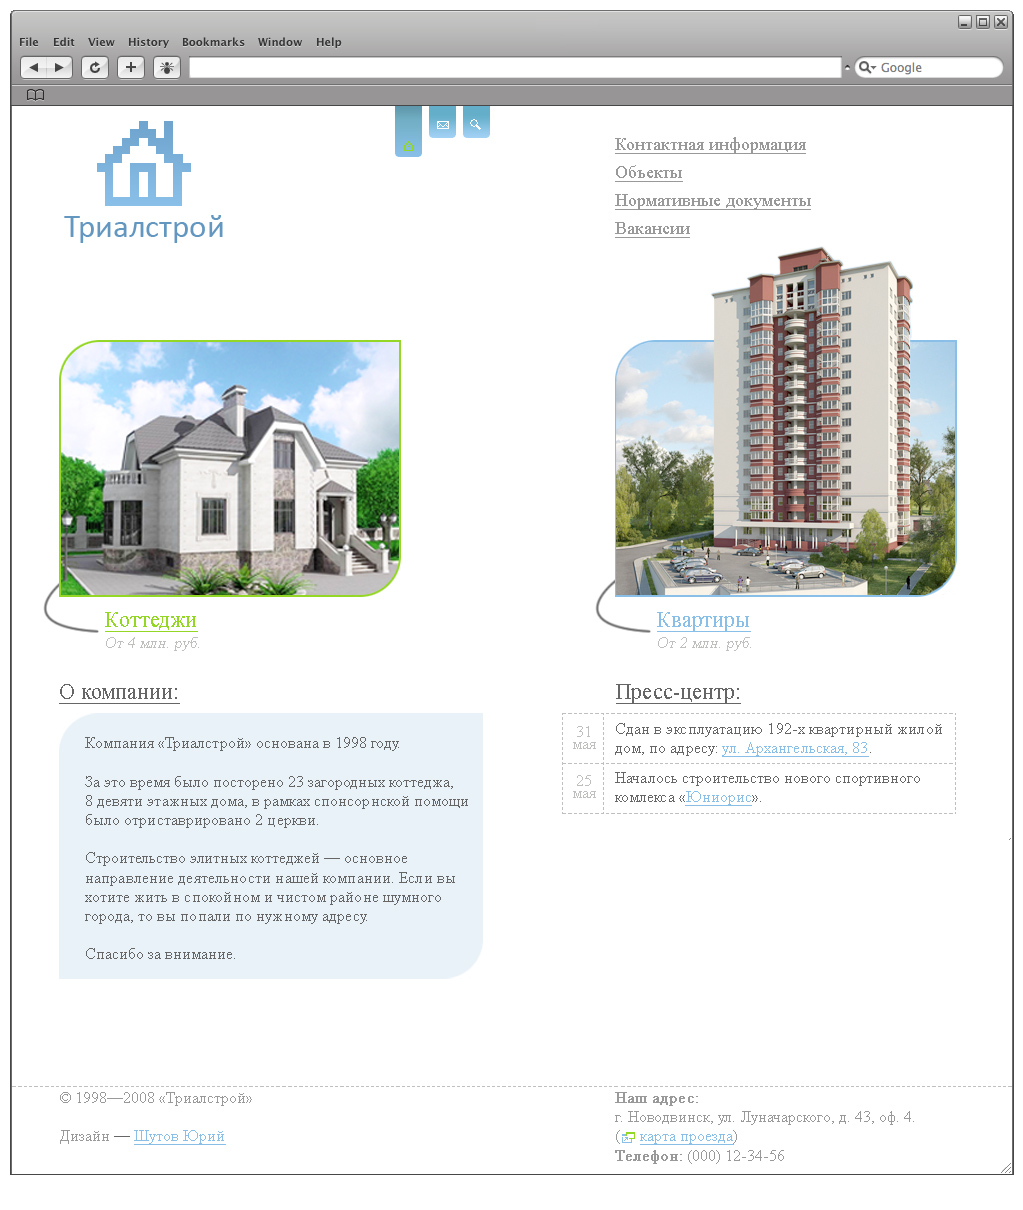 Дизайн сайта строительной компании «Триалстрой»